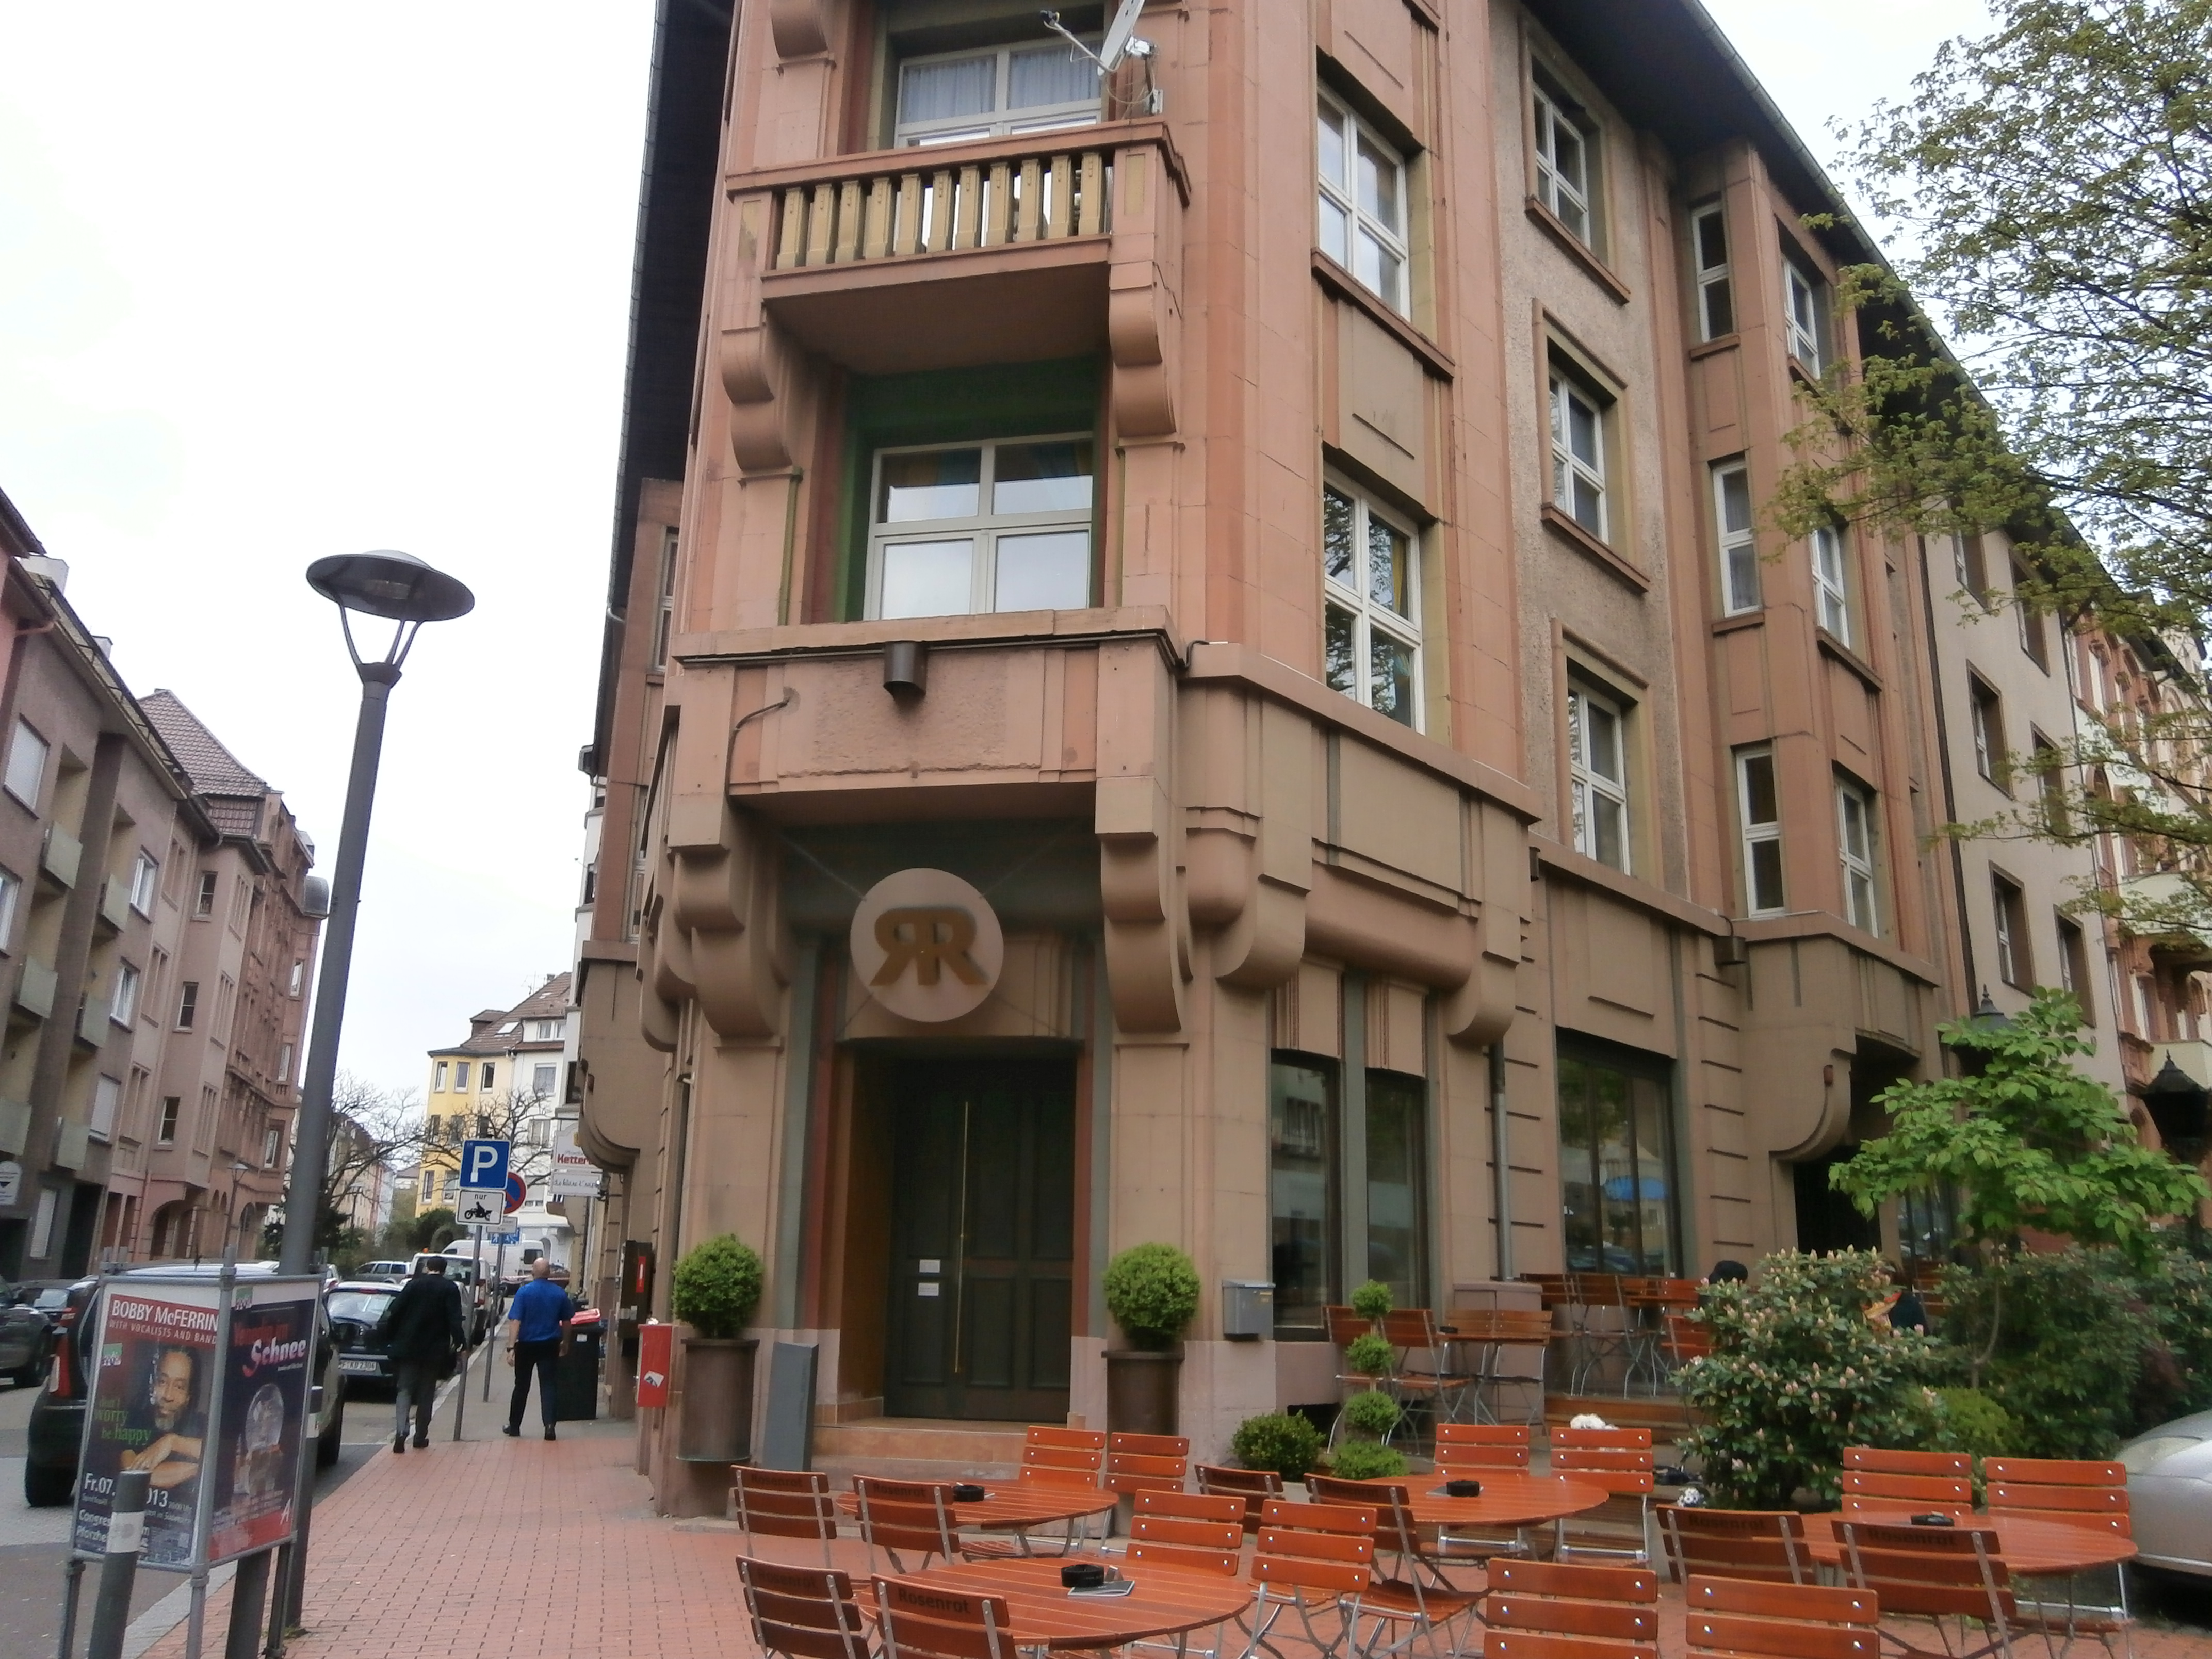 Bild 1 Cafe Rosenrot in Pforzheim